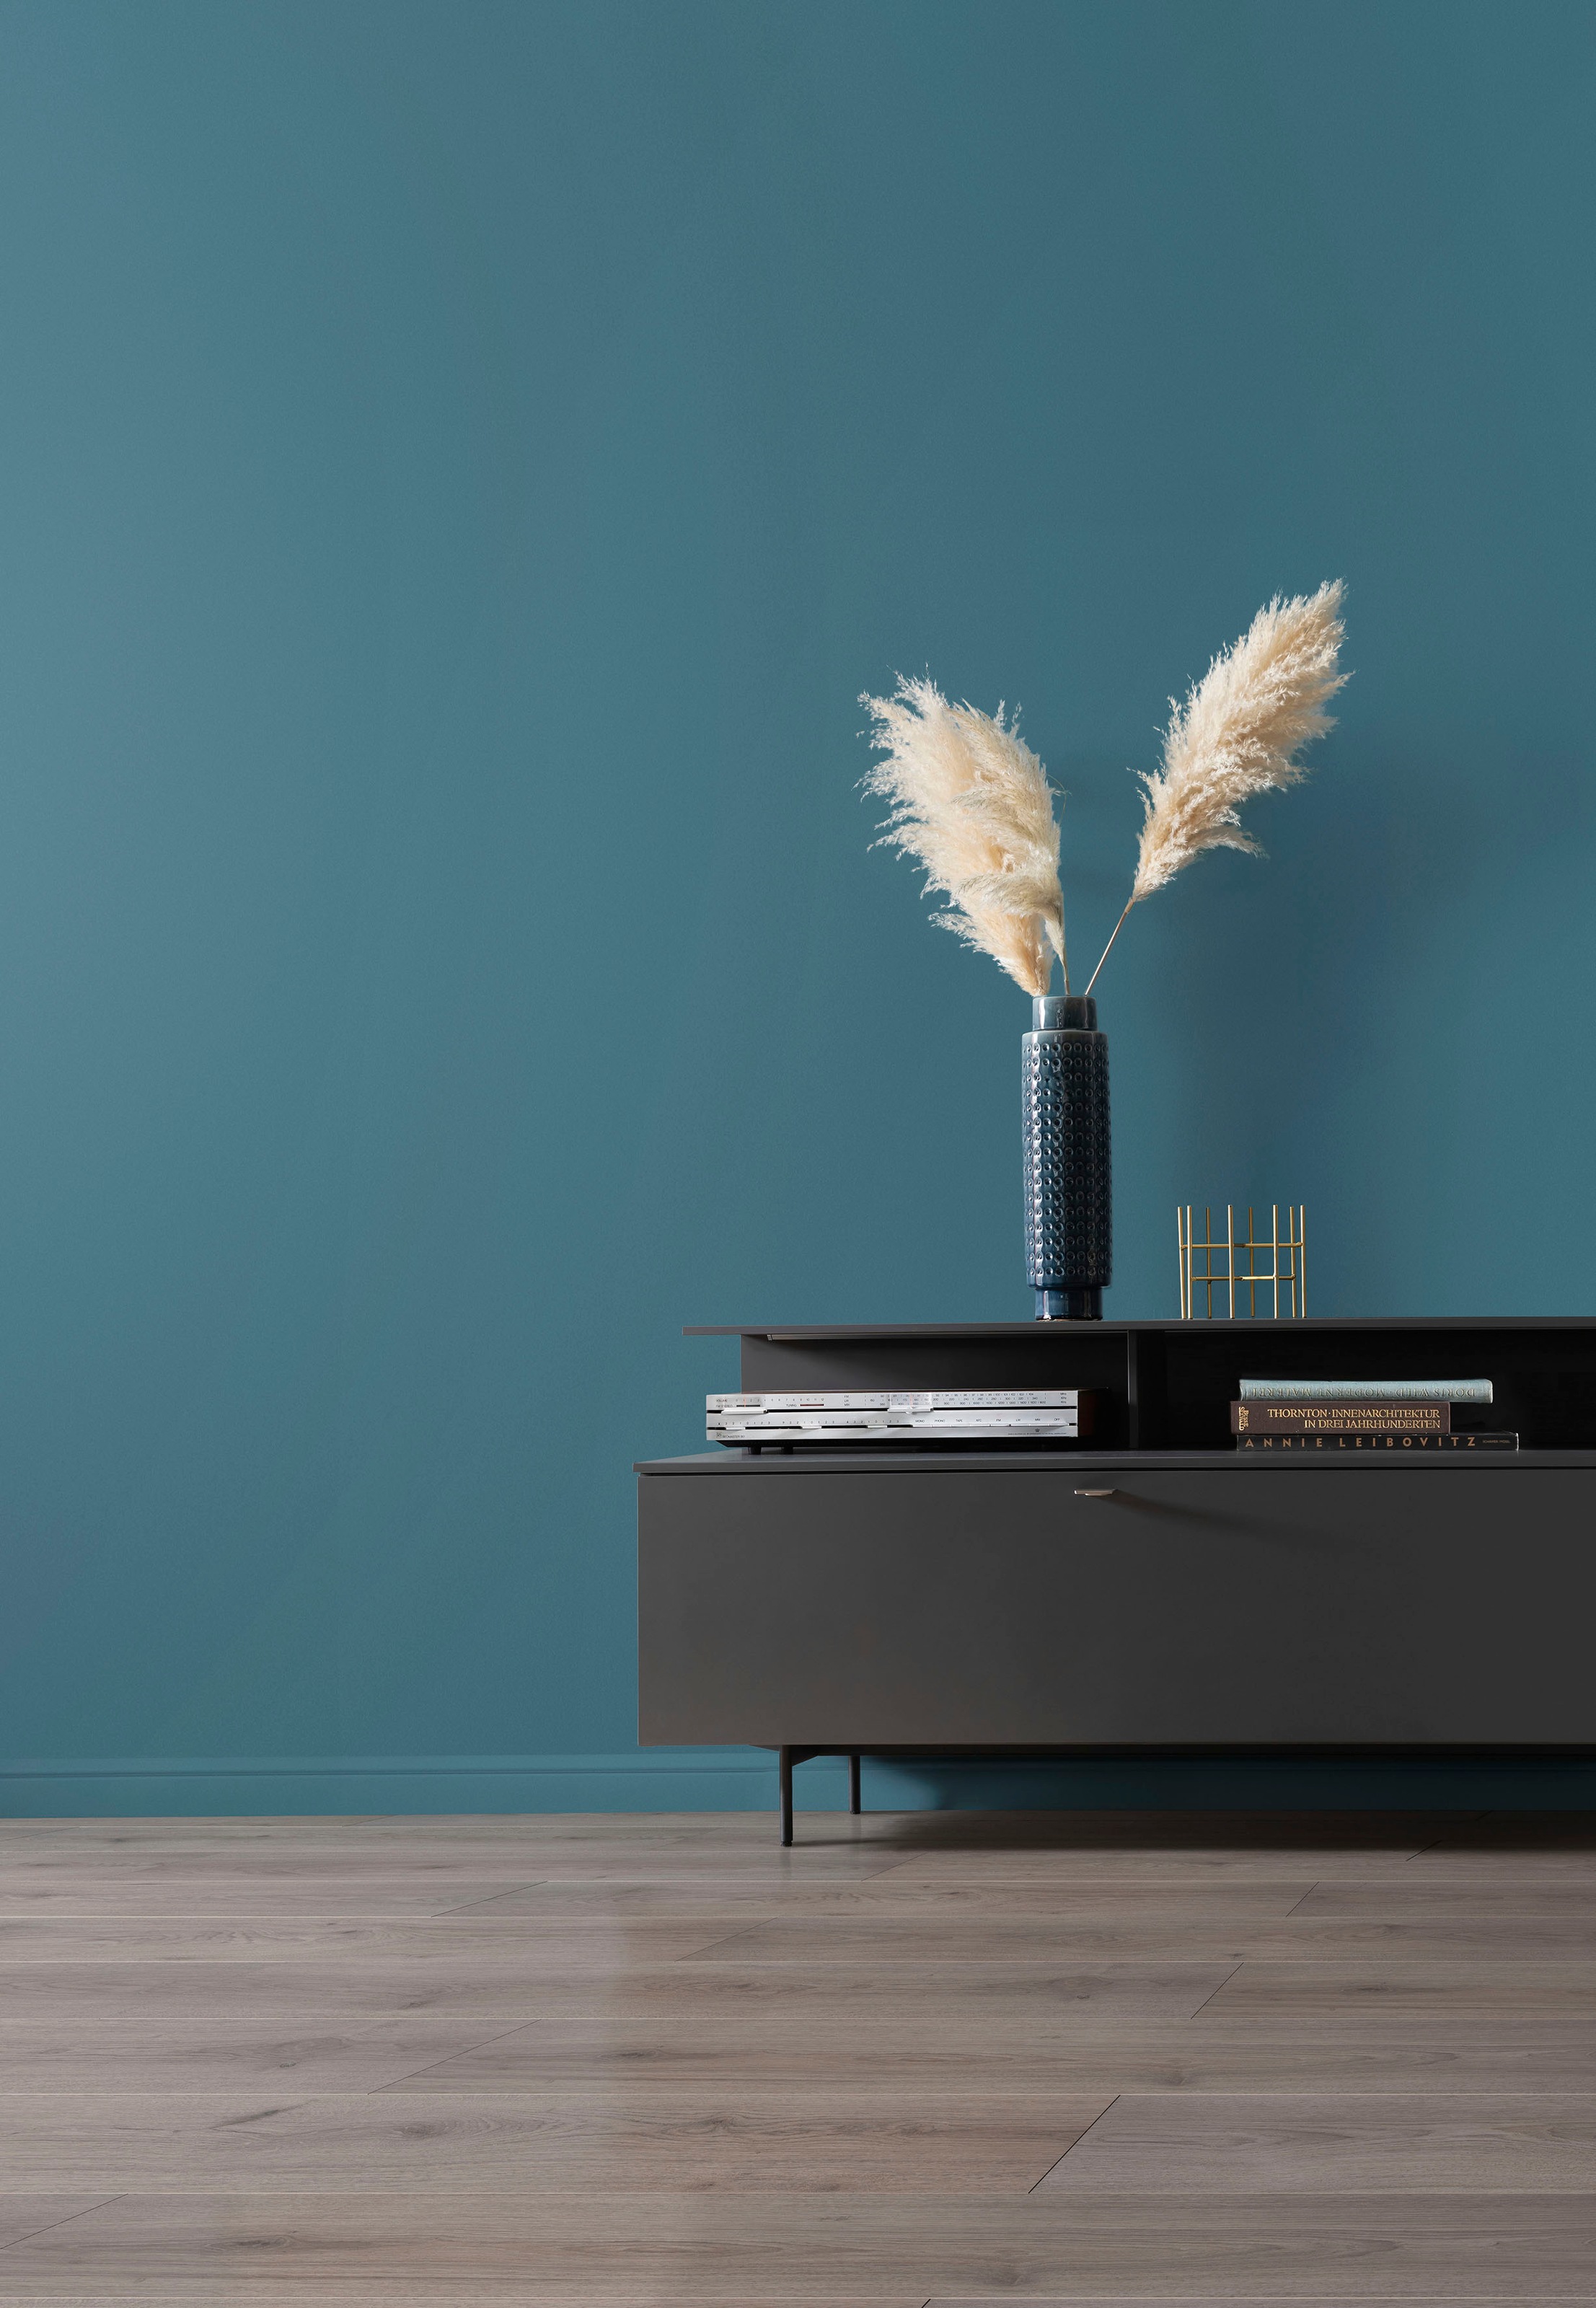 SCHÖNER WOHNEN FARBE Wand- und Deckenfarbe »designfarben Sonderedition«, hochdeckende Premium-Wandfarbe mit Spritzfrei-Formel